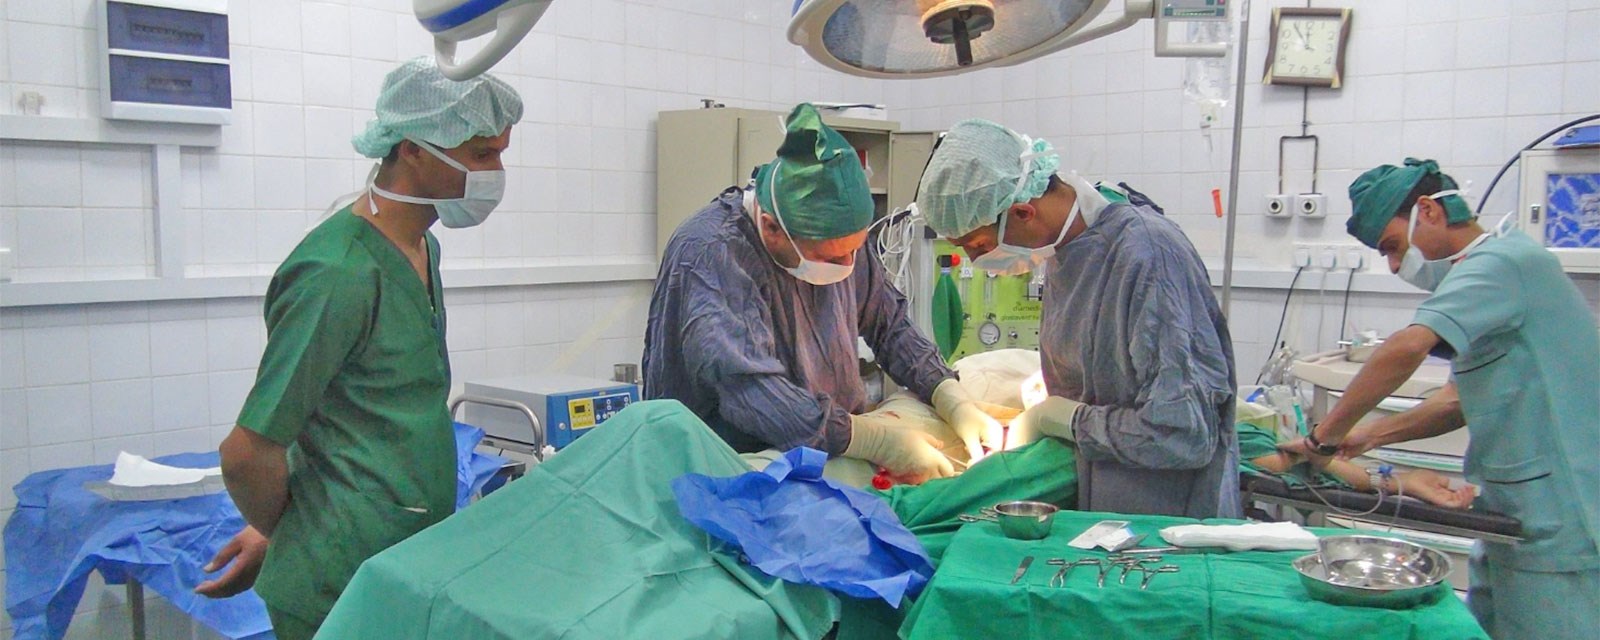 Kirurger står bøyd over en pasient, iført operasjonsklær